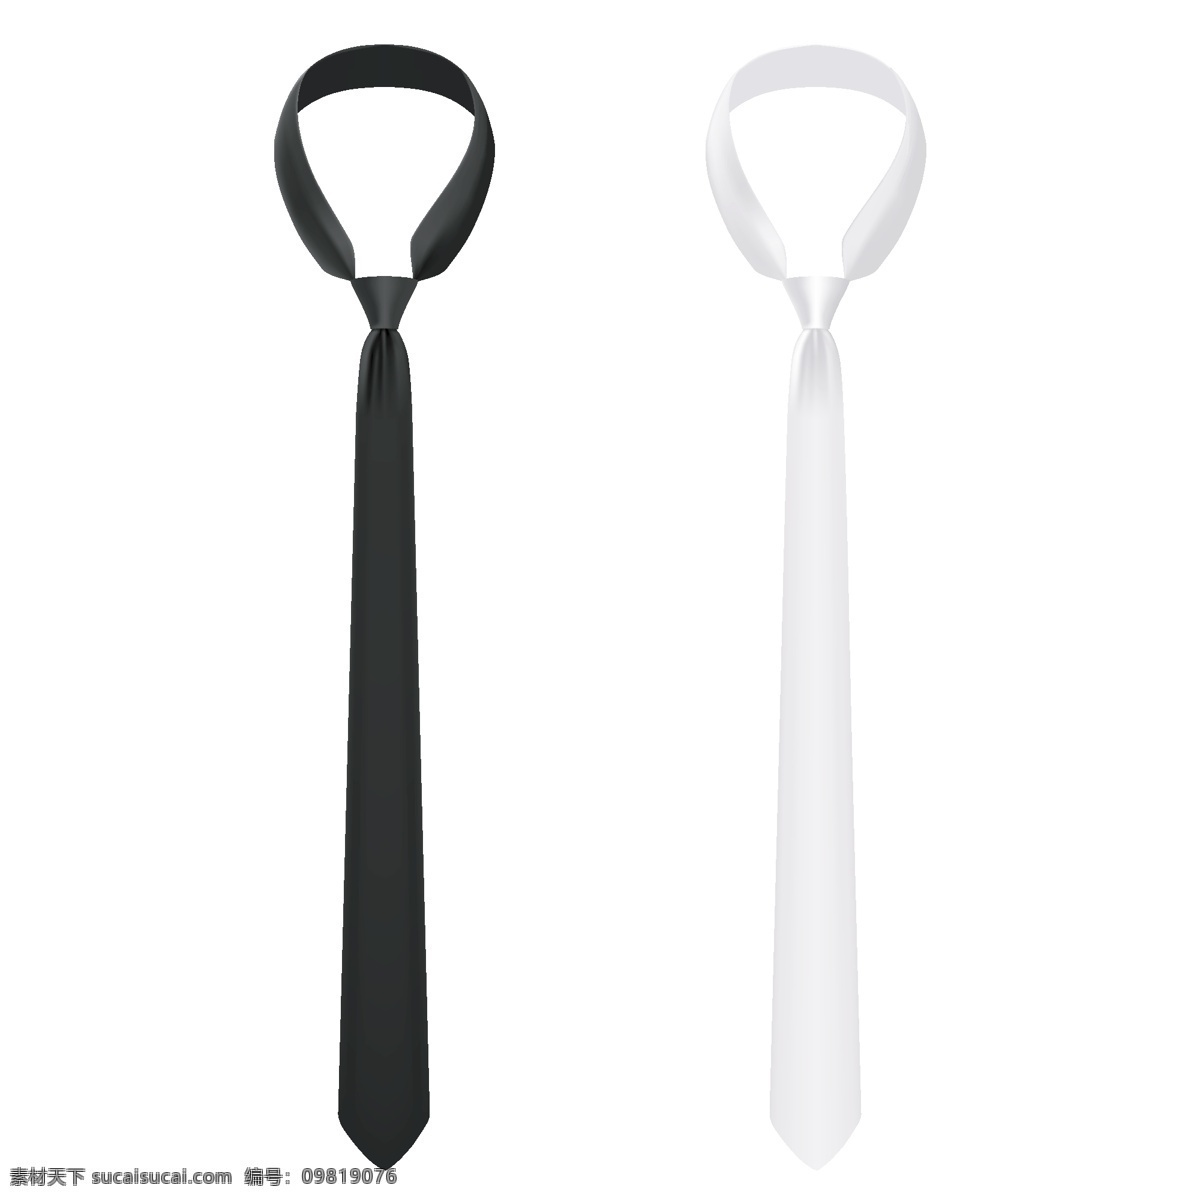 黑白 领带 矢量 模板下载 黑白领带 矢量领带 领带插图 卡通领带 领带图标 珠宝服饰 生活百科 矢量素材 白色